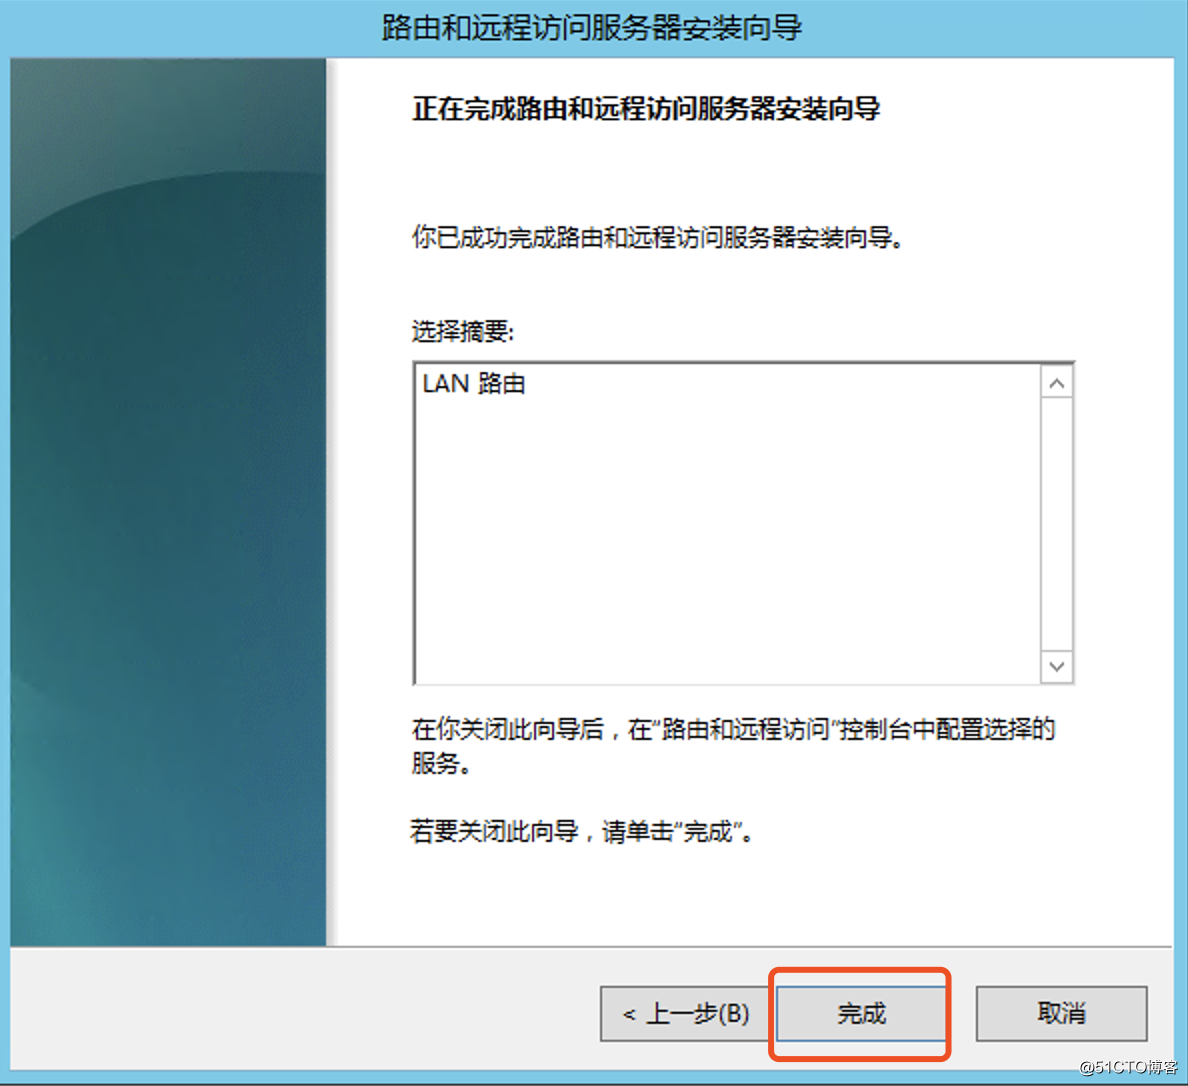 配置 Windows Server 2012 R2 為路由器